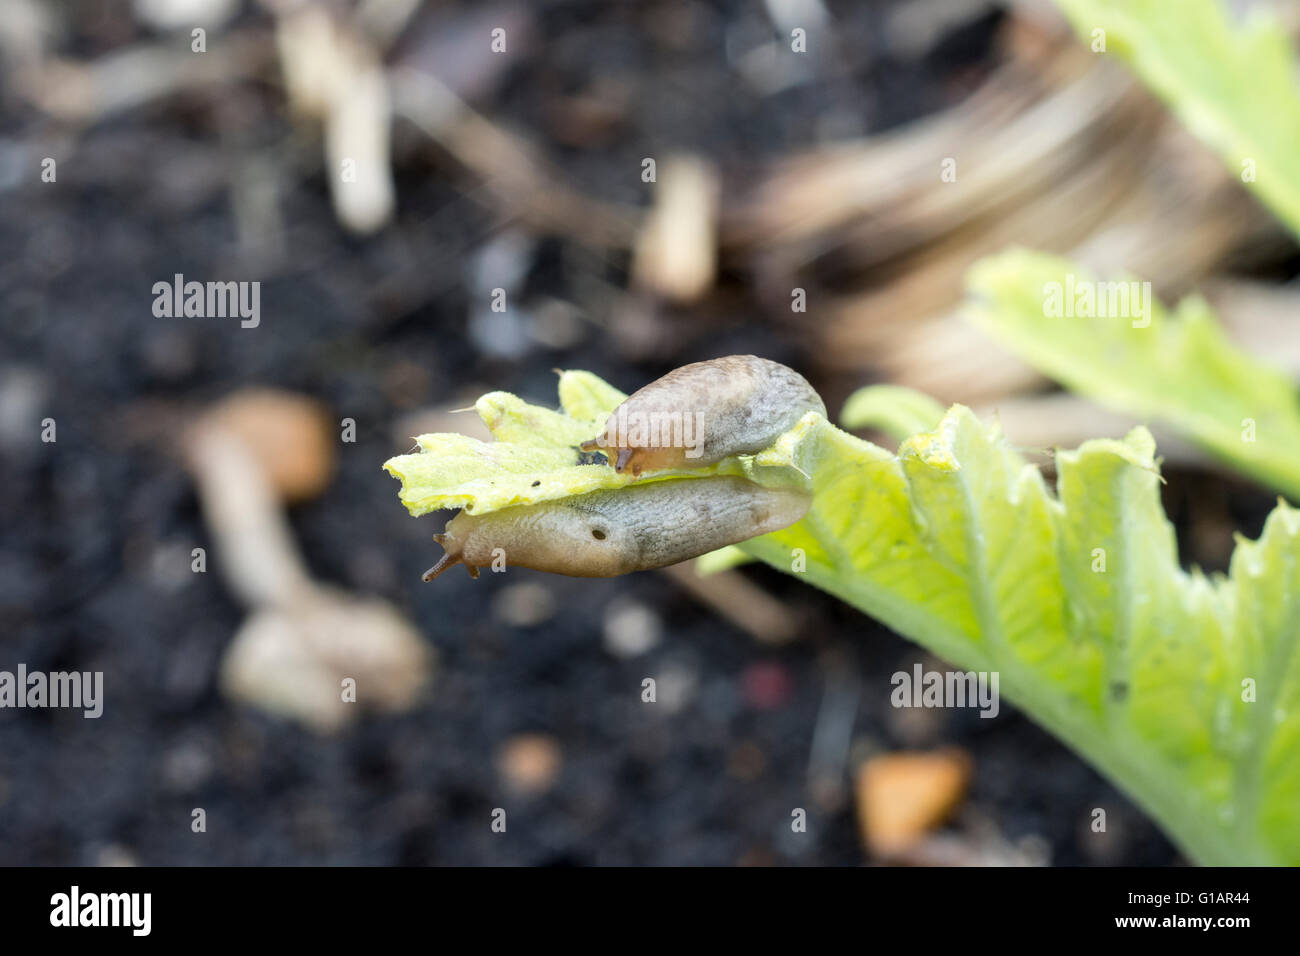 Deroceras reticulatum Grey field slug or Grey garden slug or Netted Slug Stock Photo